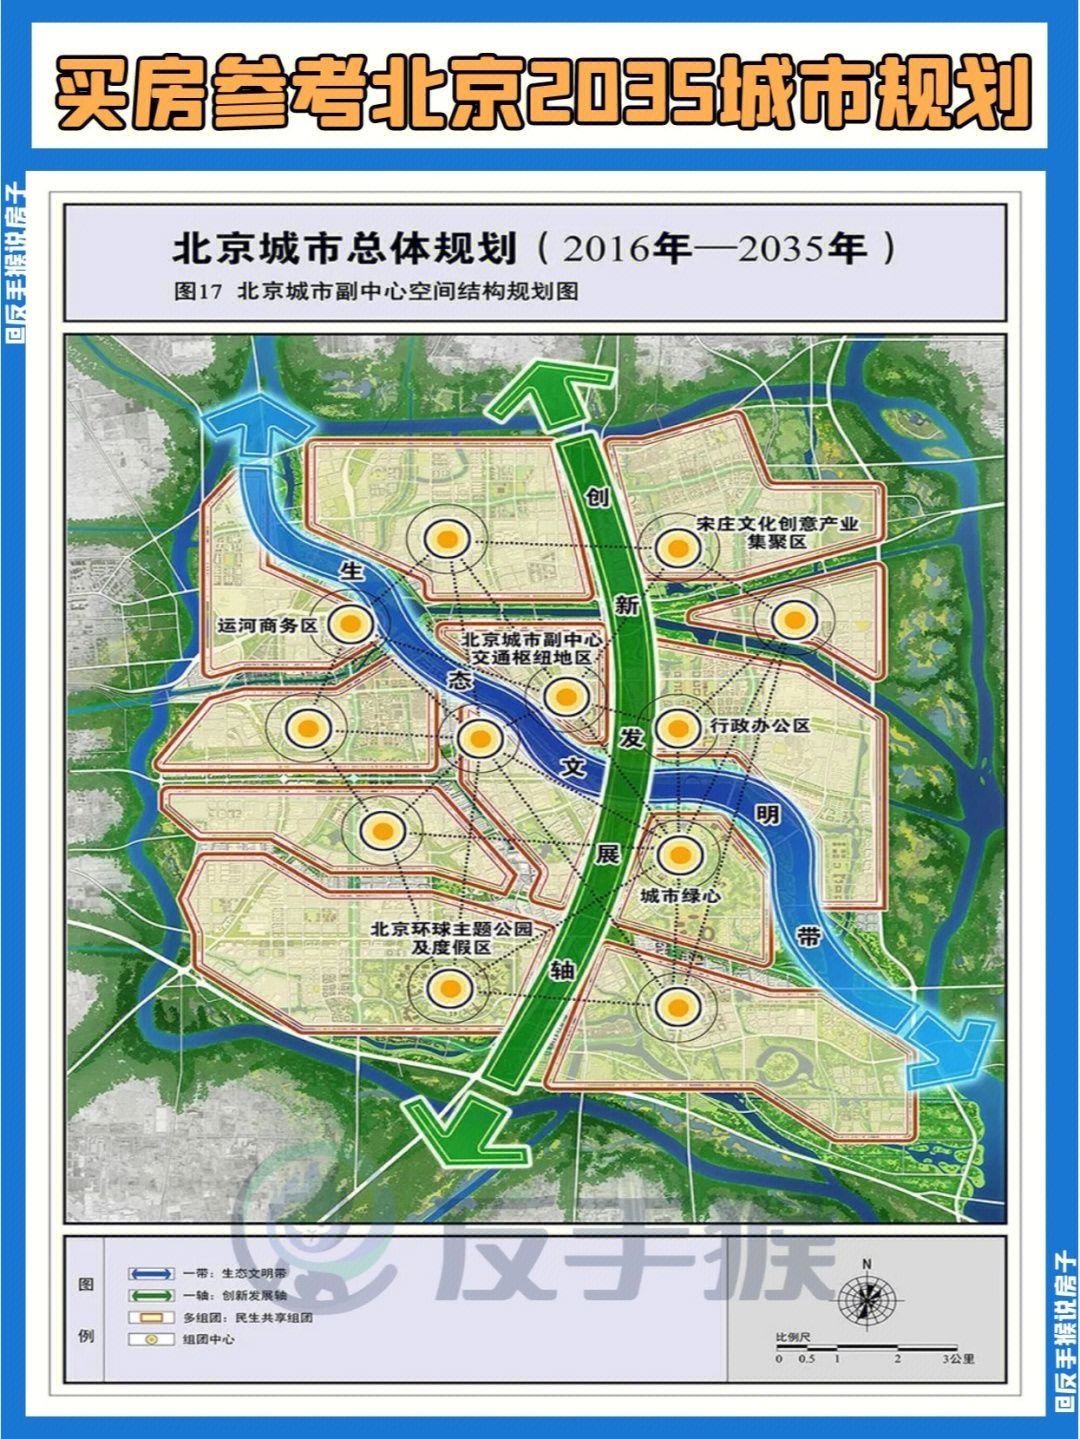 看懂73北京规划再买房城市副中心篇